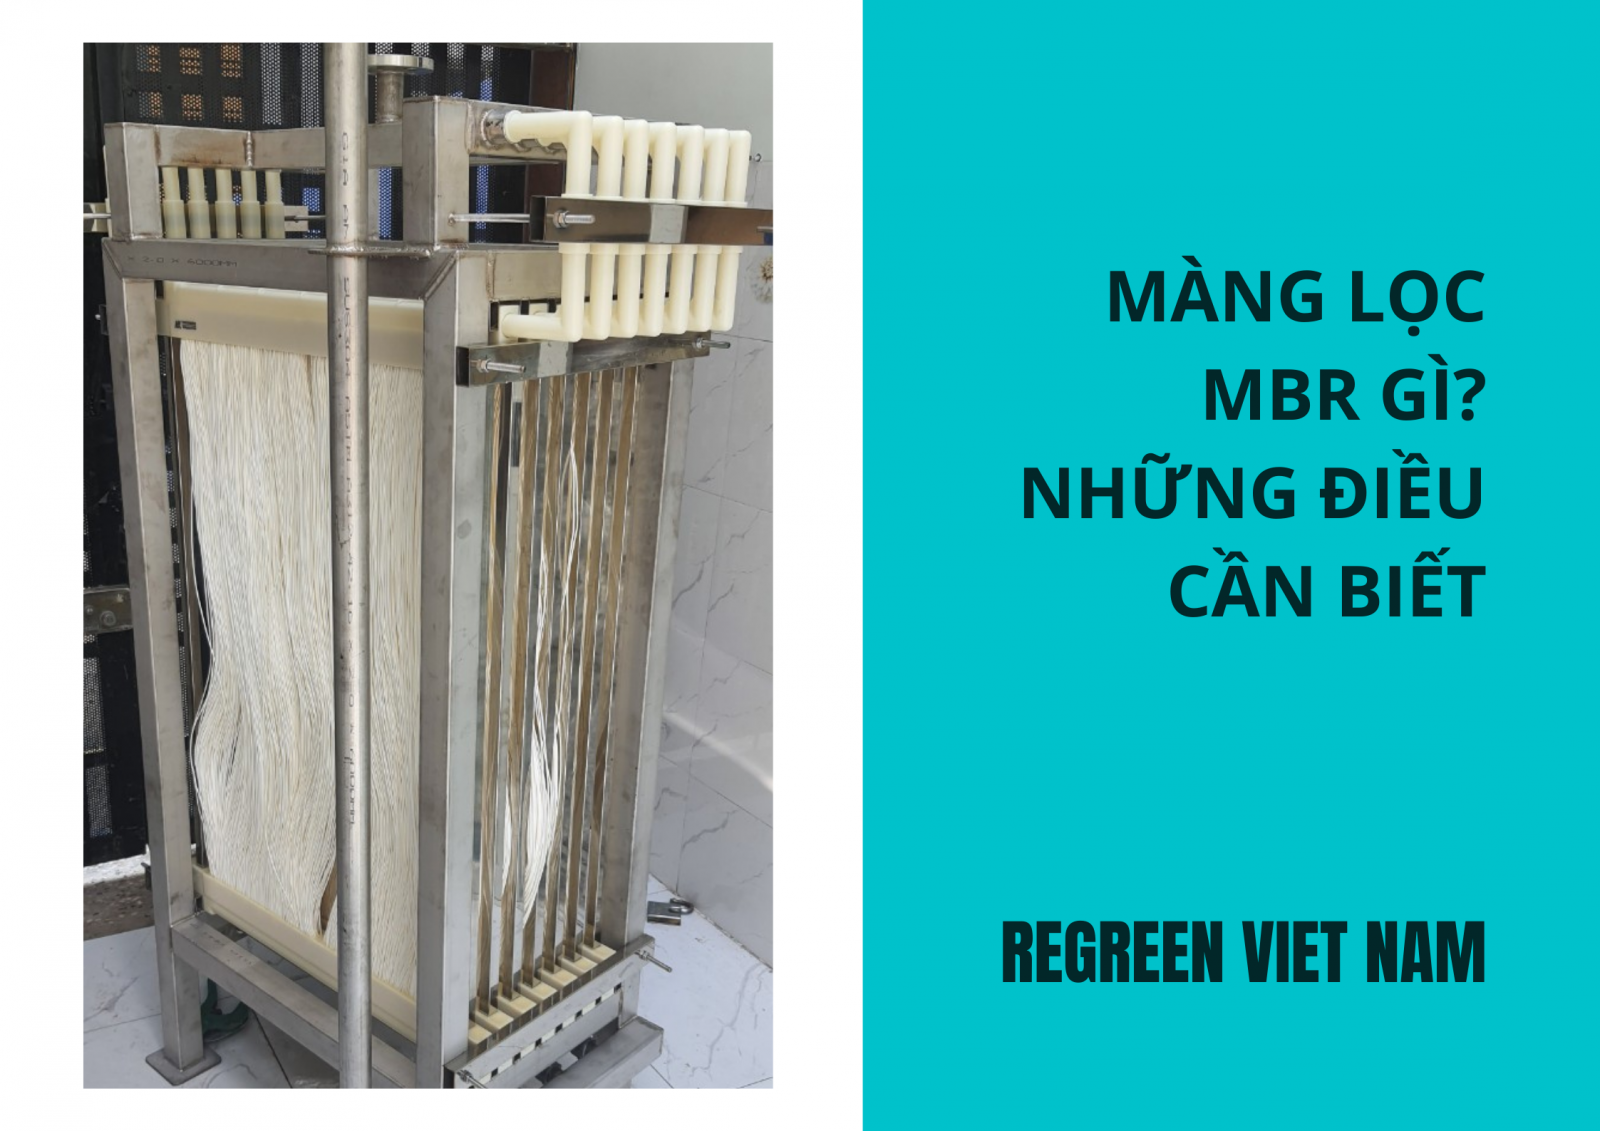 Màng lọc MBR được ứng dụng trong các nhà máy có nhu cầu xử lý nước thải